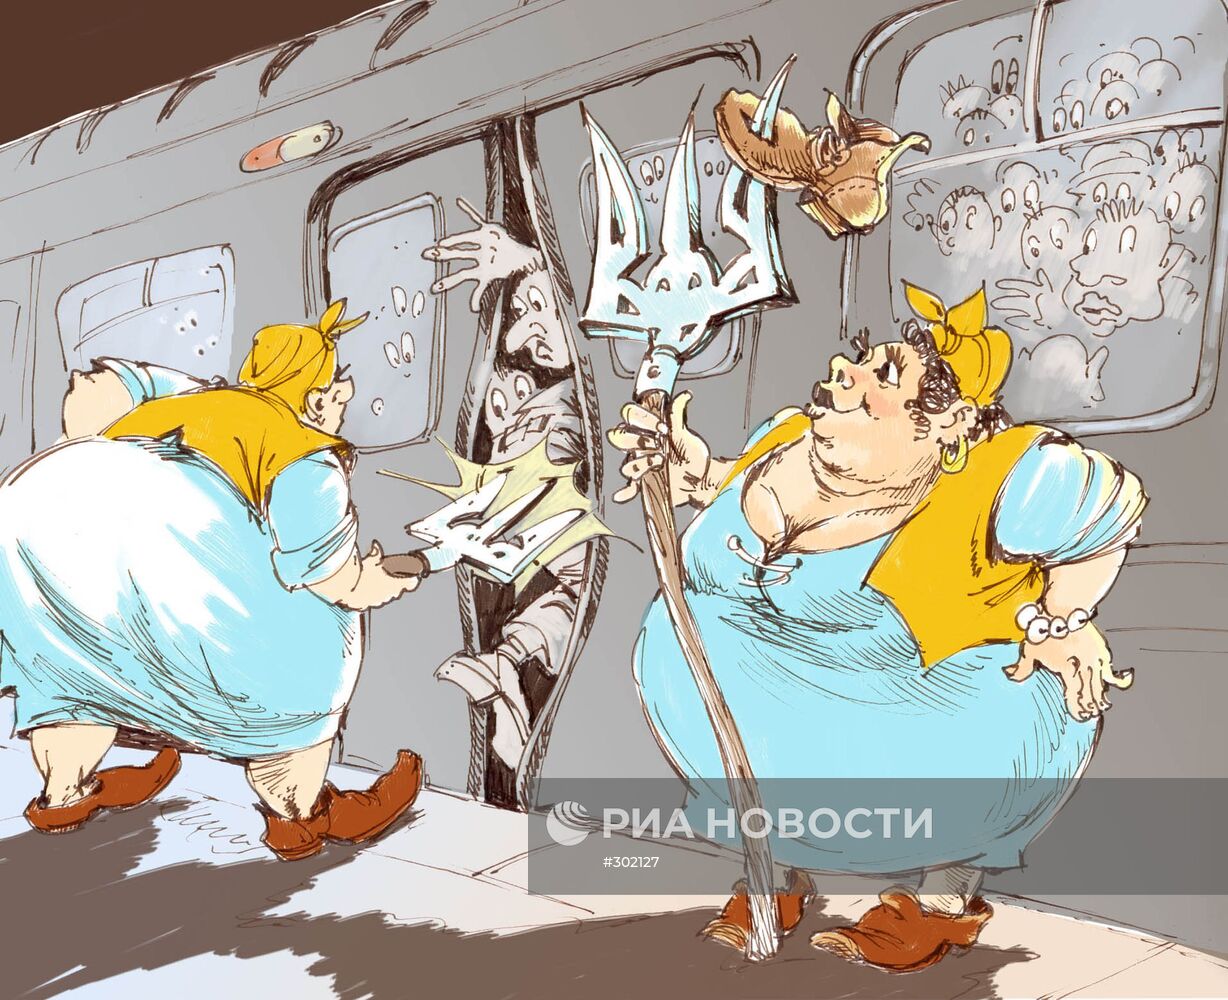 В киевском метро пассажиров вежливо "трамбуют"